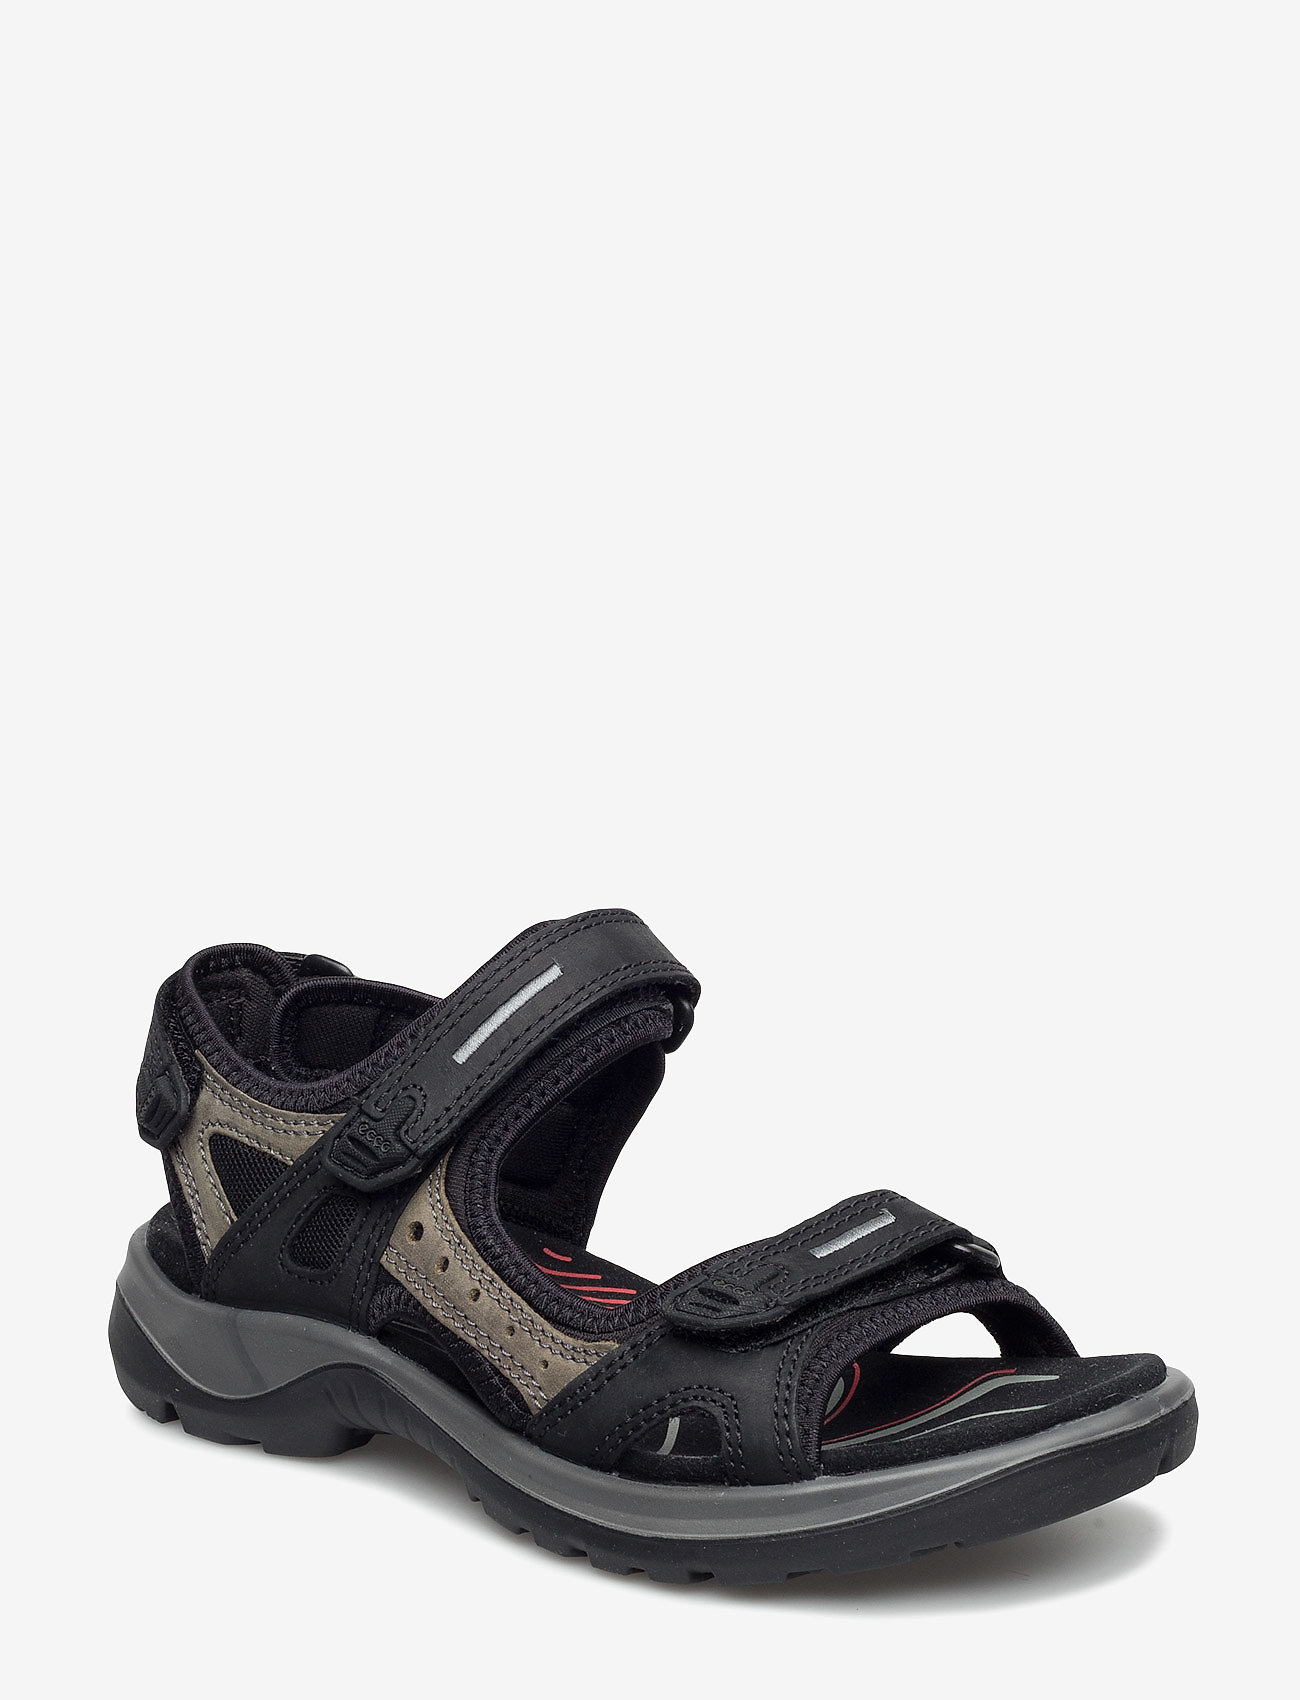 ECCO - OFFROAD - flat sandals - black/mole/black - 0